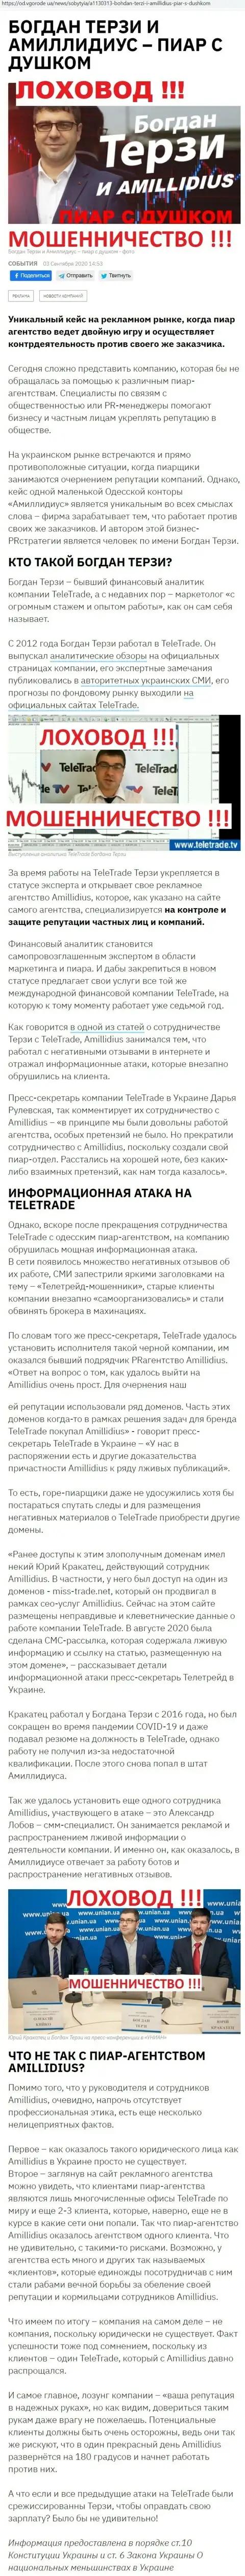 Богдан Терзи ненадежный партнер, информация со слов бывшего работника фирмы Амиллидиус